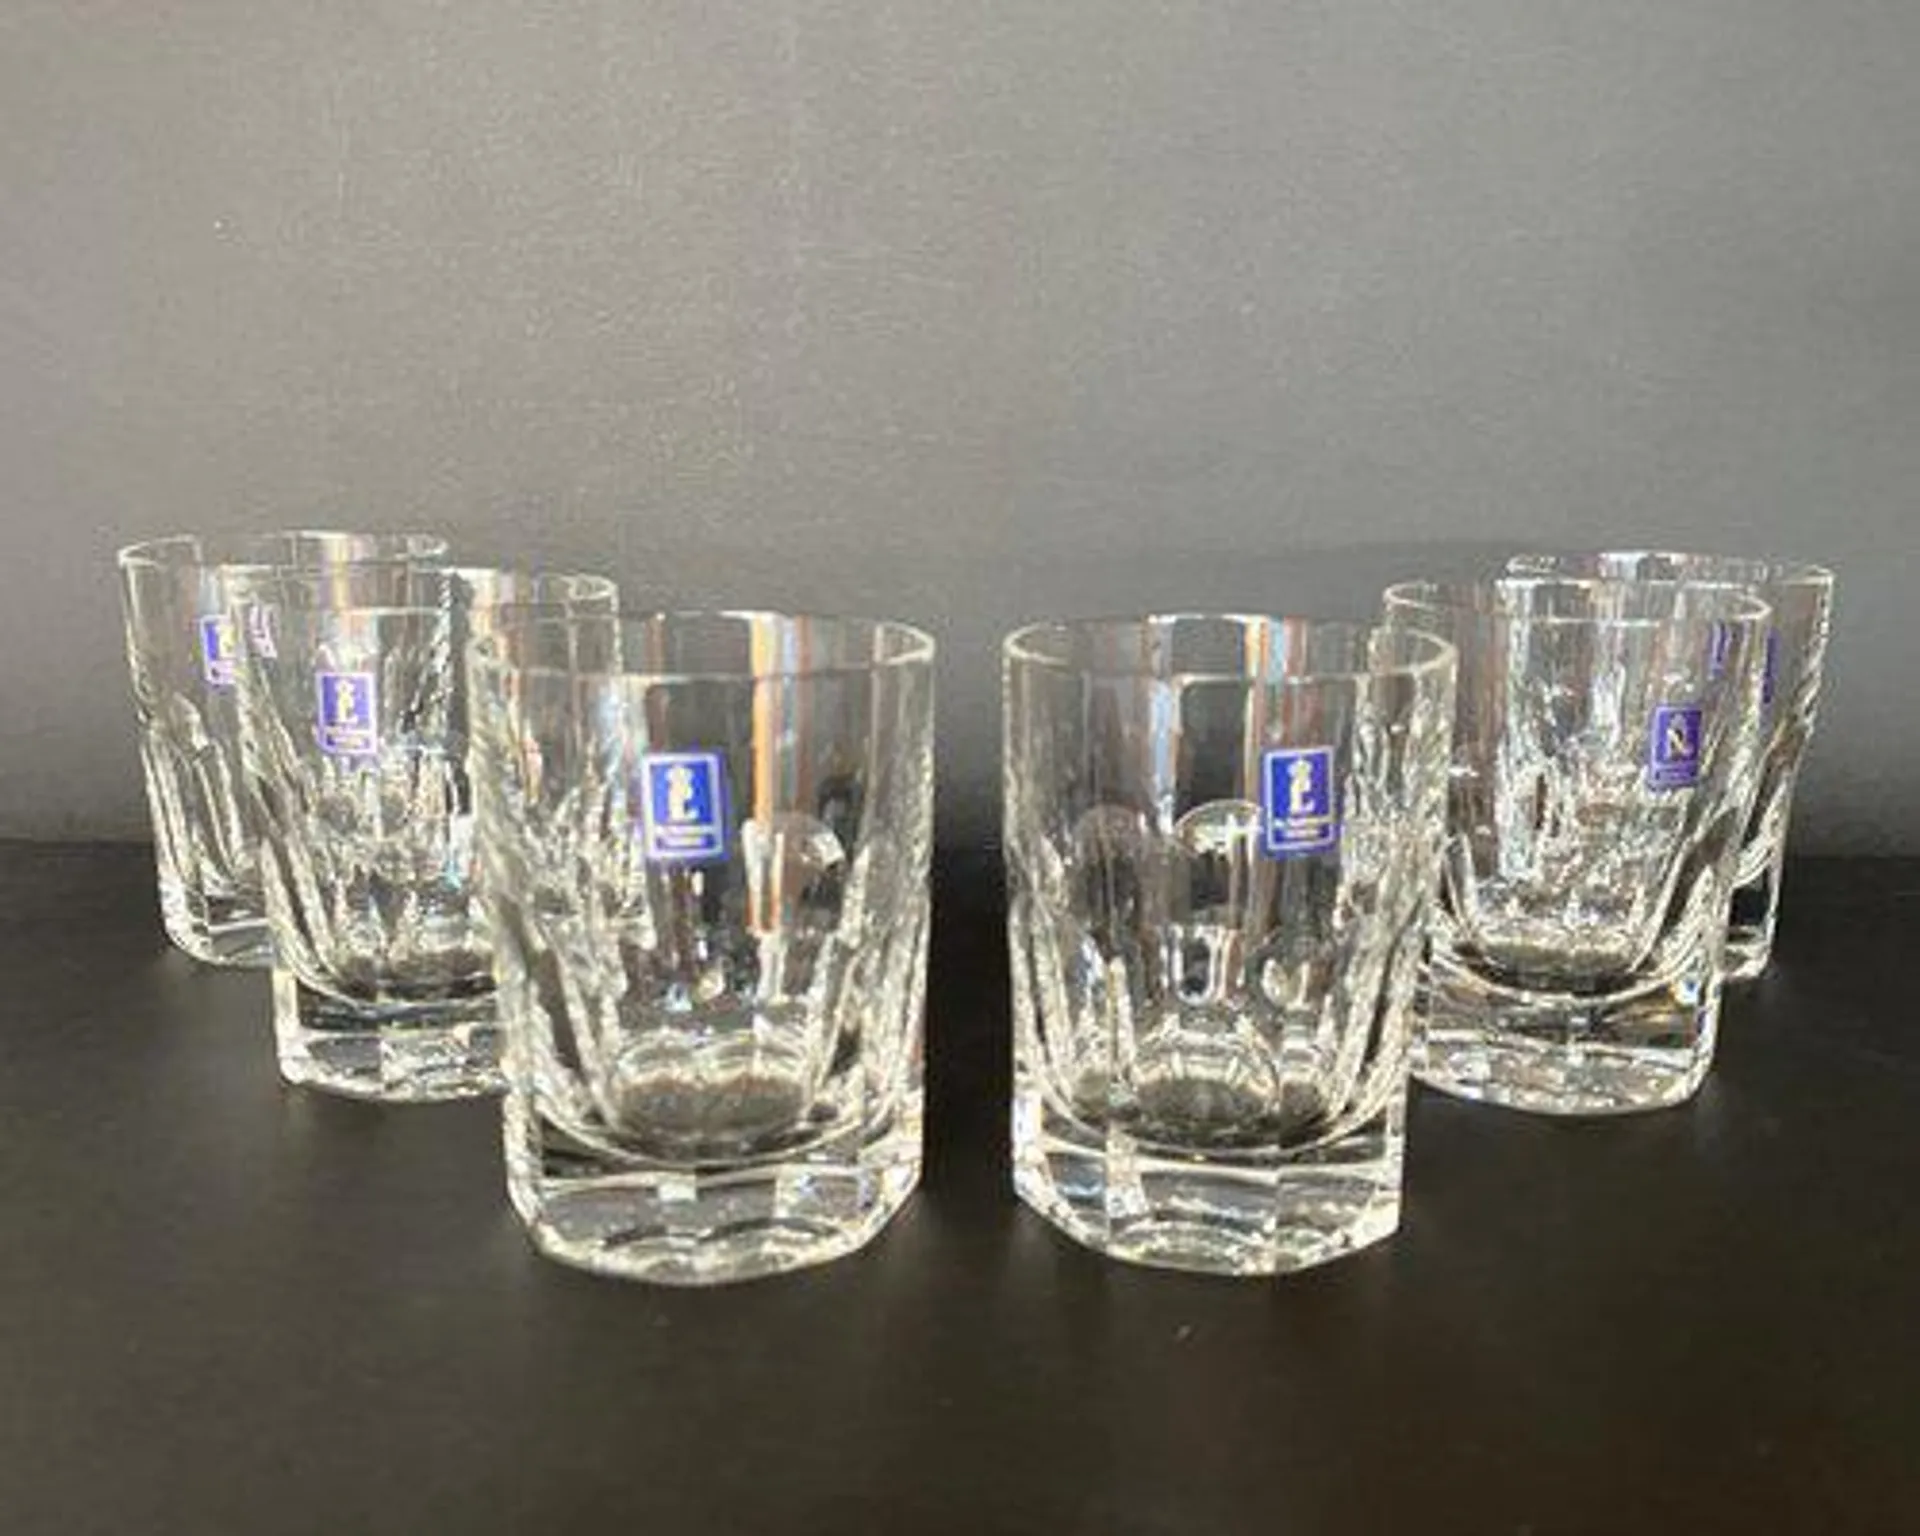 German Alexandra Series Whiskey Glasses in Cut Crystal, 1990, Set of 6